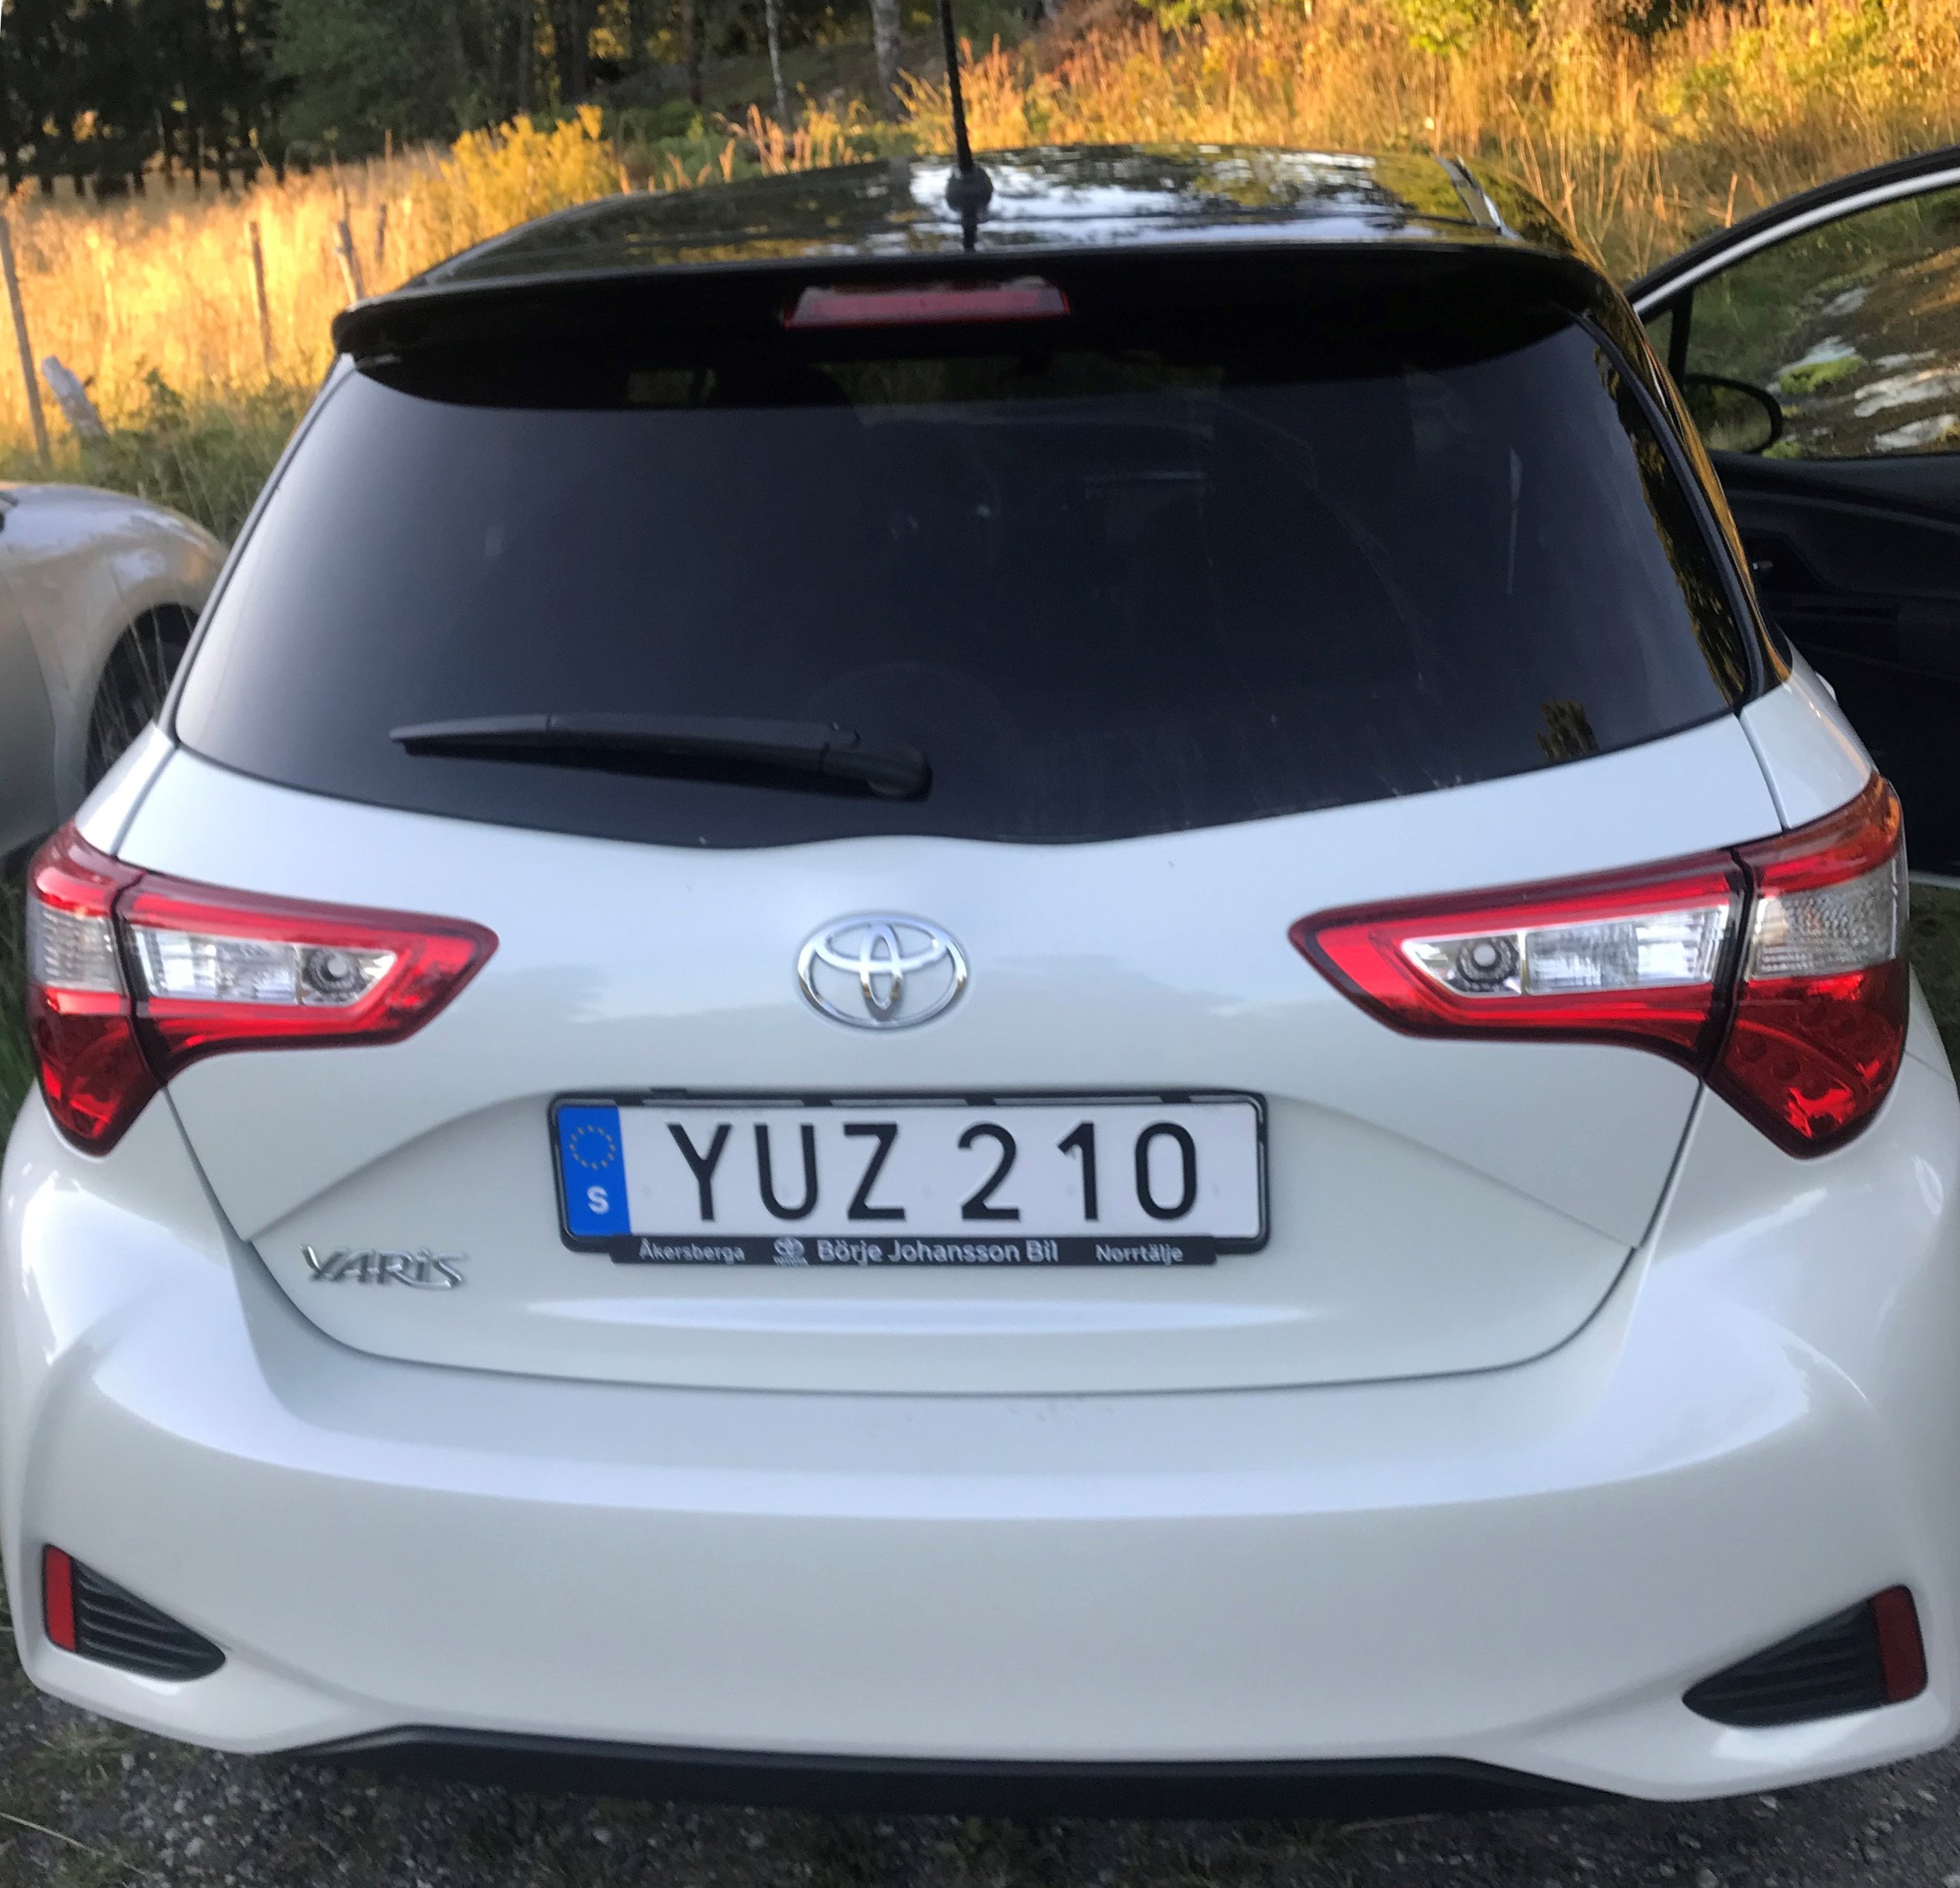 Vit med svart tak Toyota Yaris stulen i Österskär norr om Stockholm